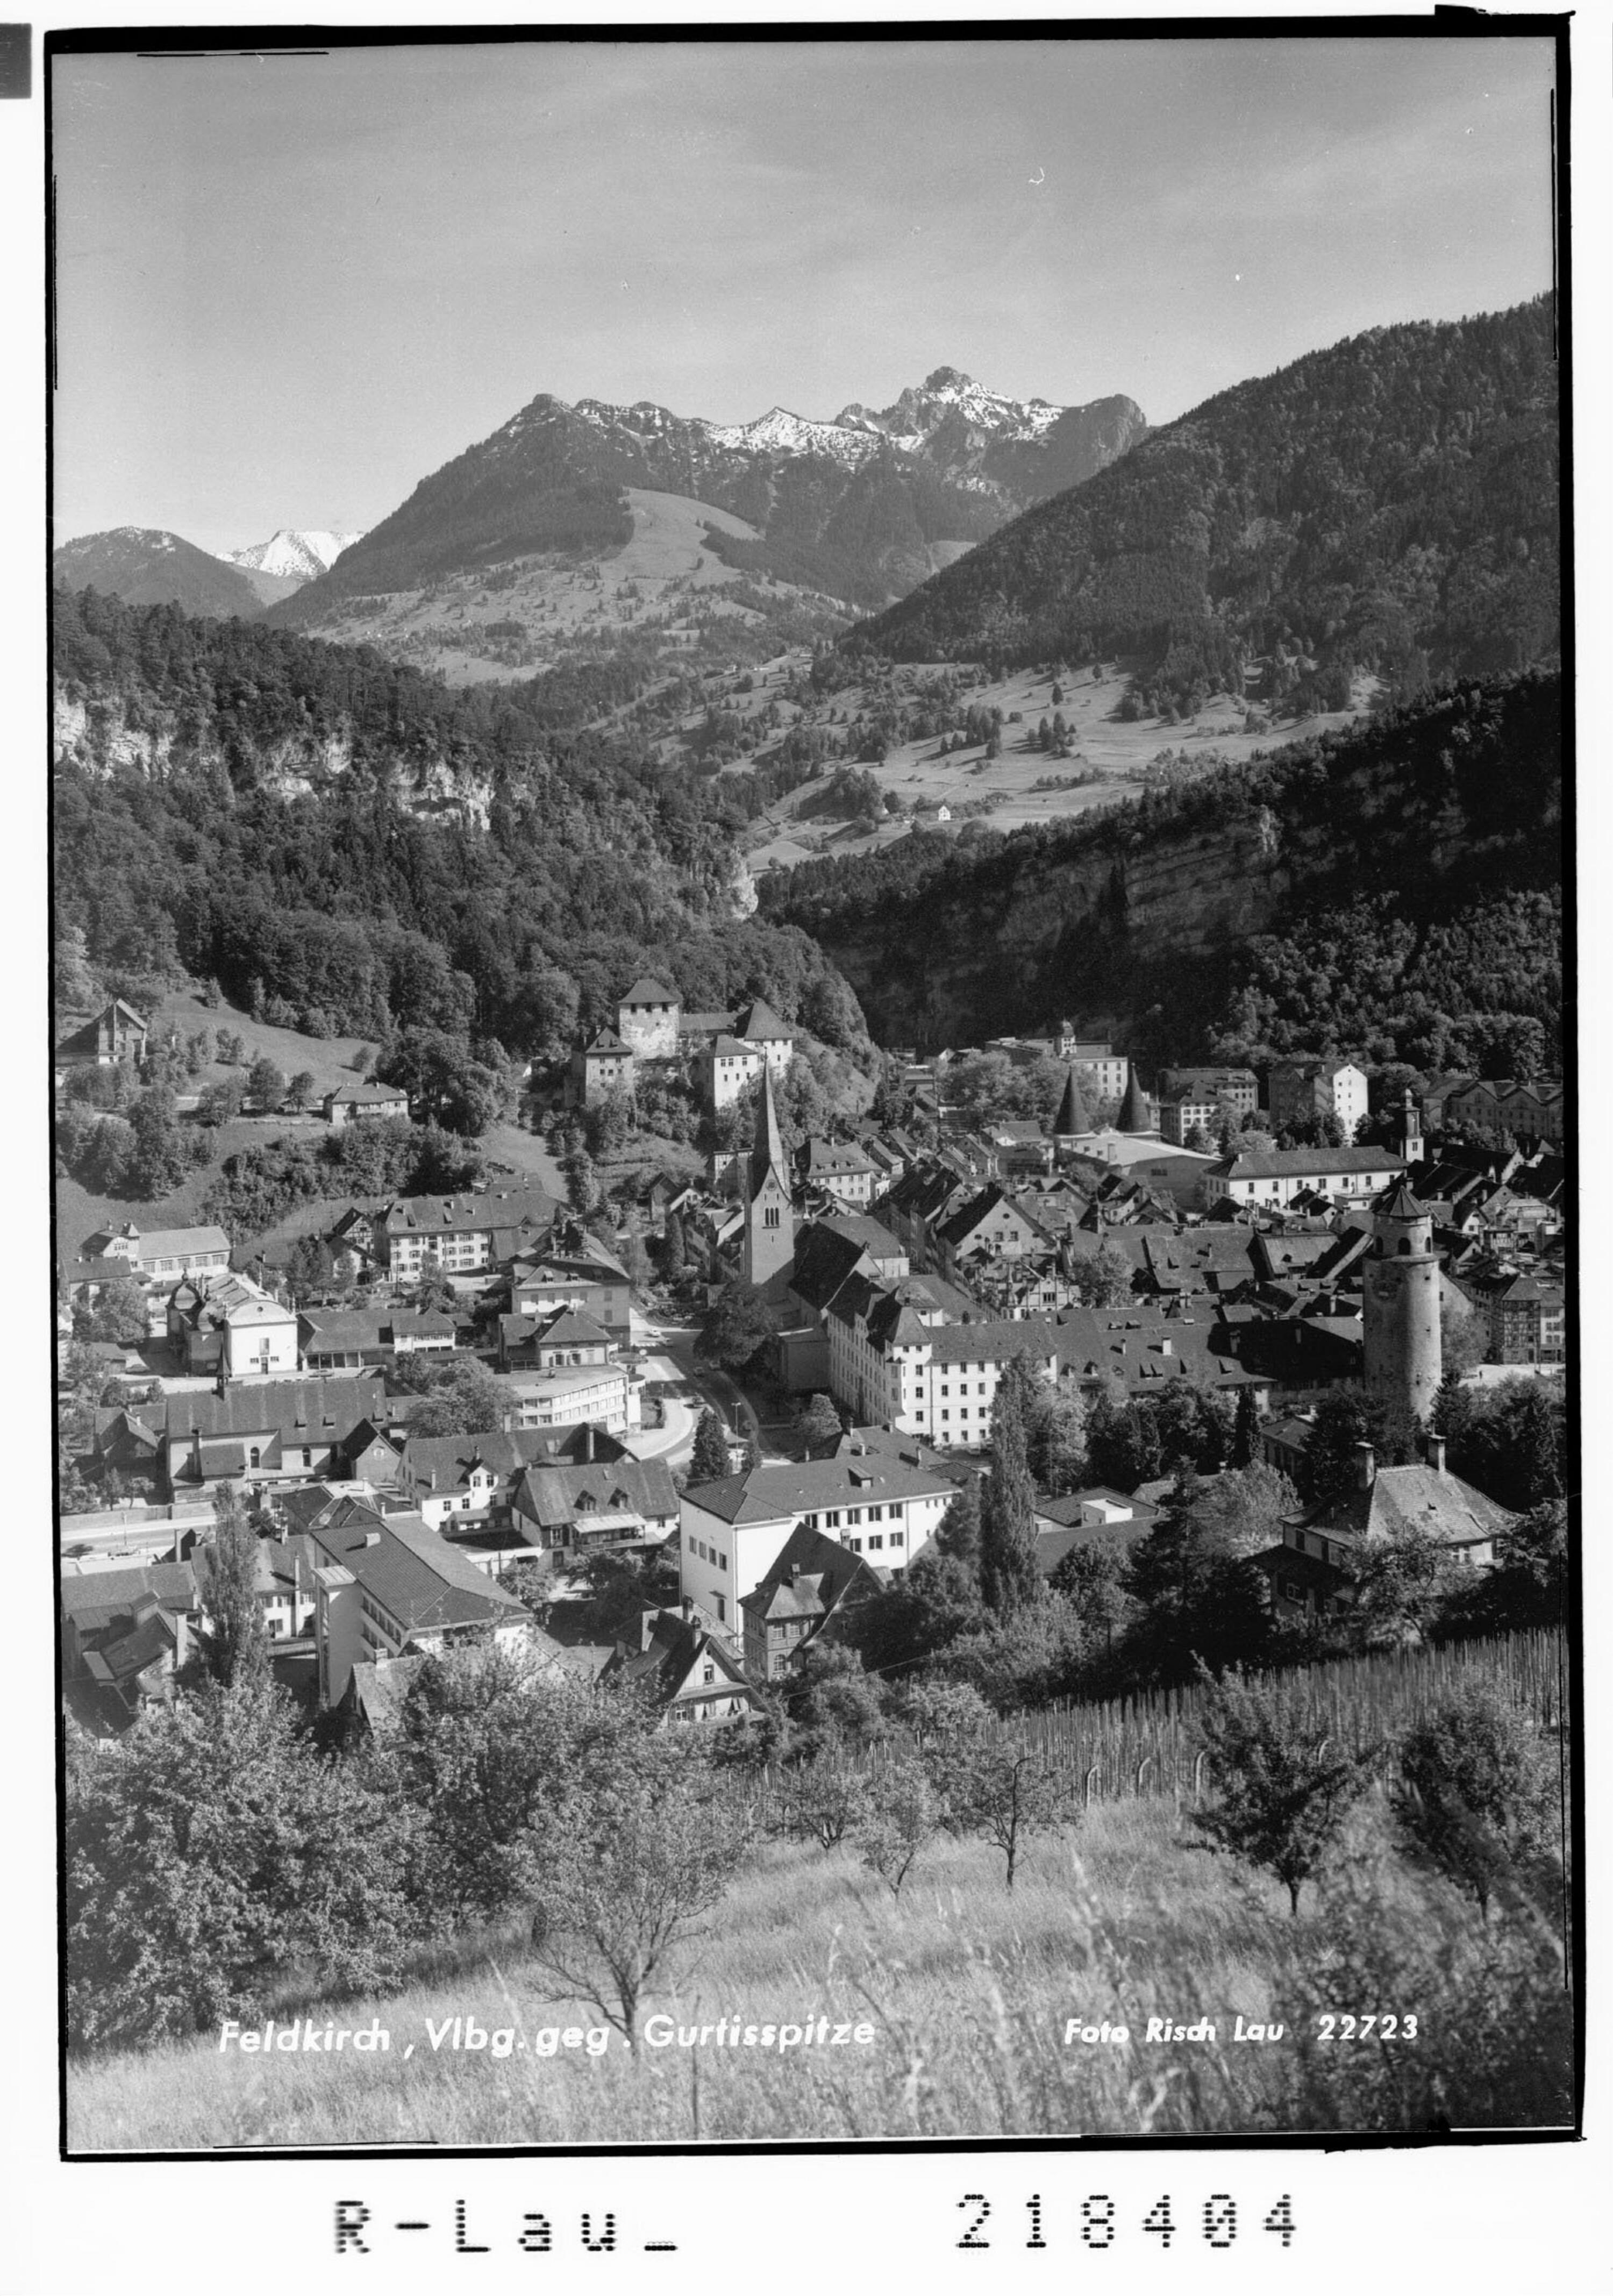 Feldkirch, Vorarlberg gegen Gurtistspitze></div>


    <hr>
    <div class=